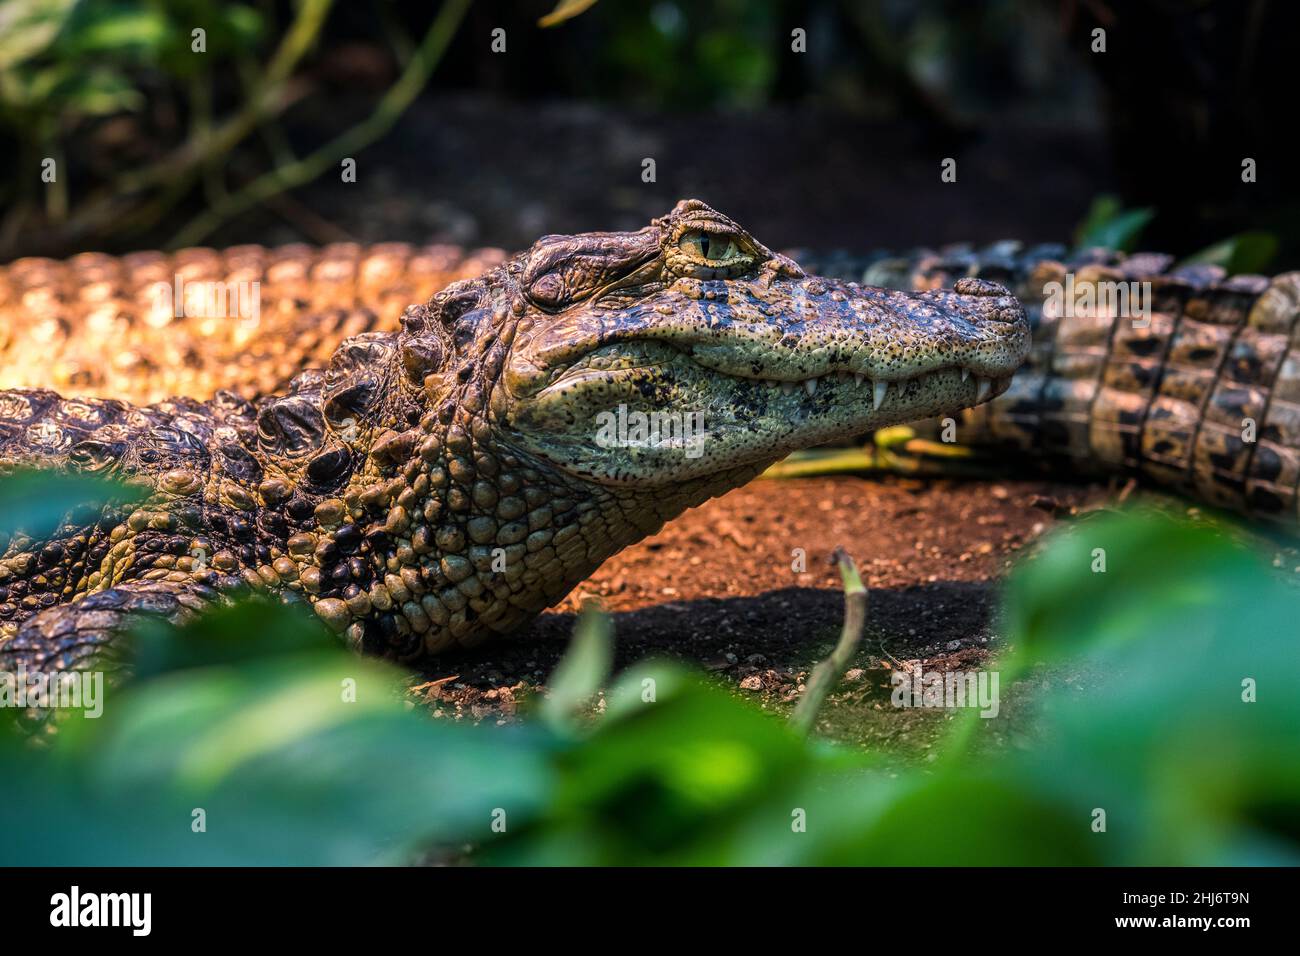 Broad-snouted caiman (Caiman latirostris). Stock Photo